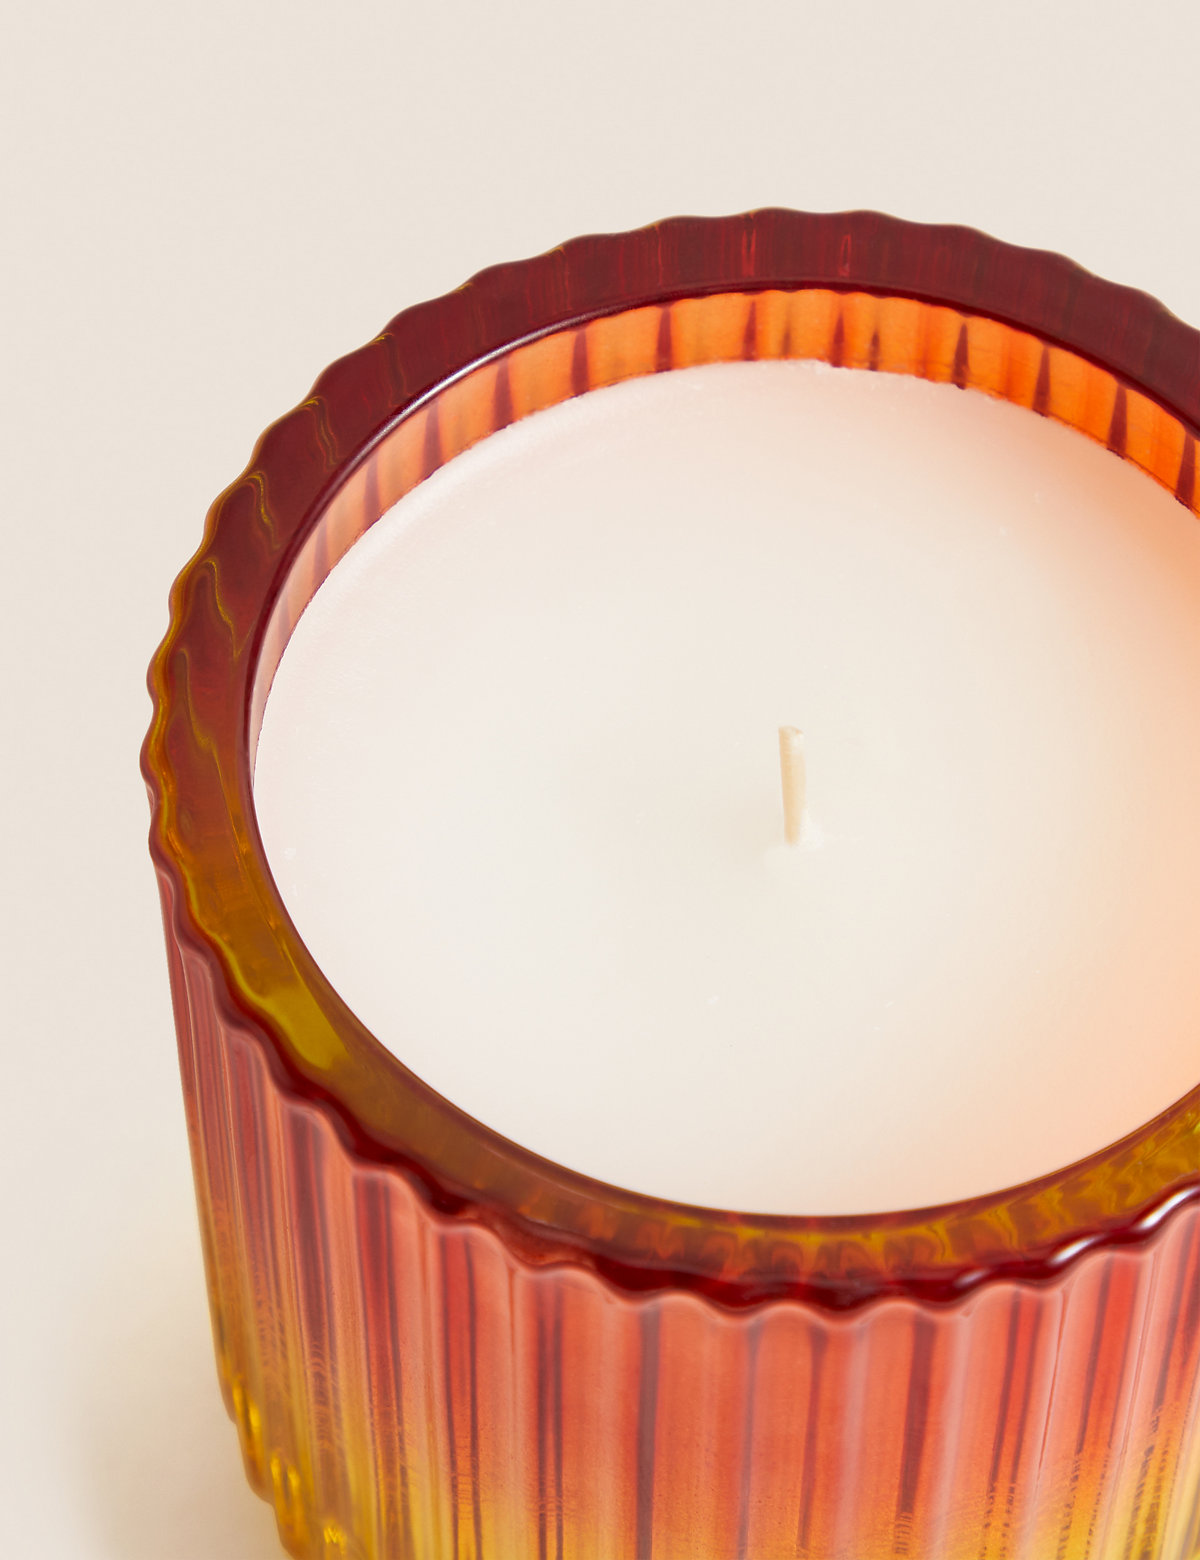 Citronella Colour Change Light Up Candle